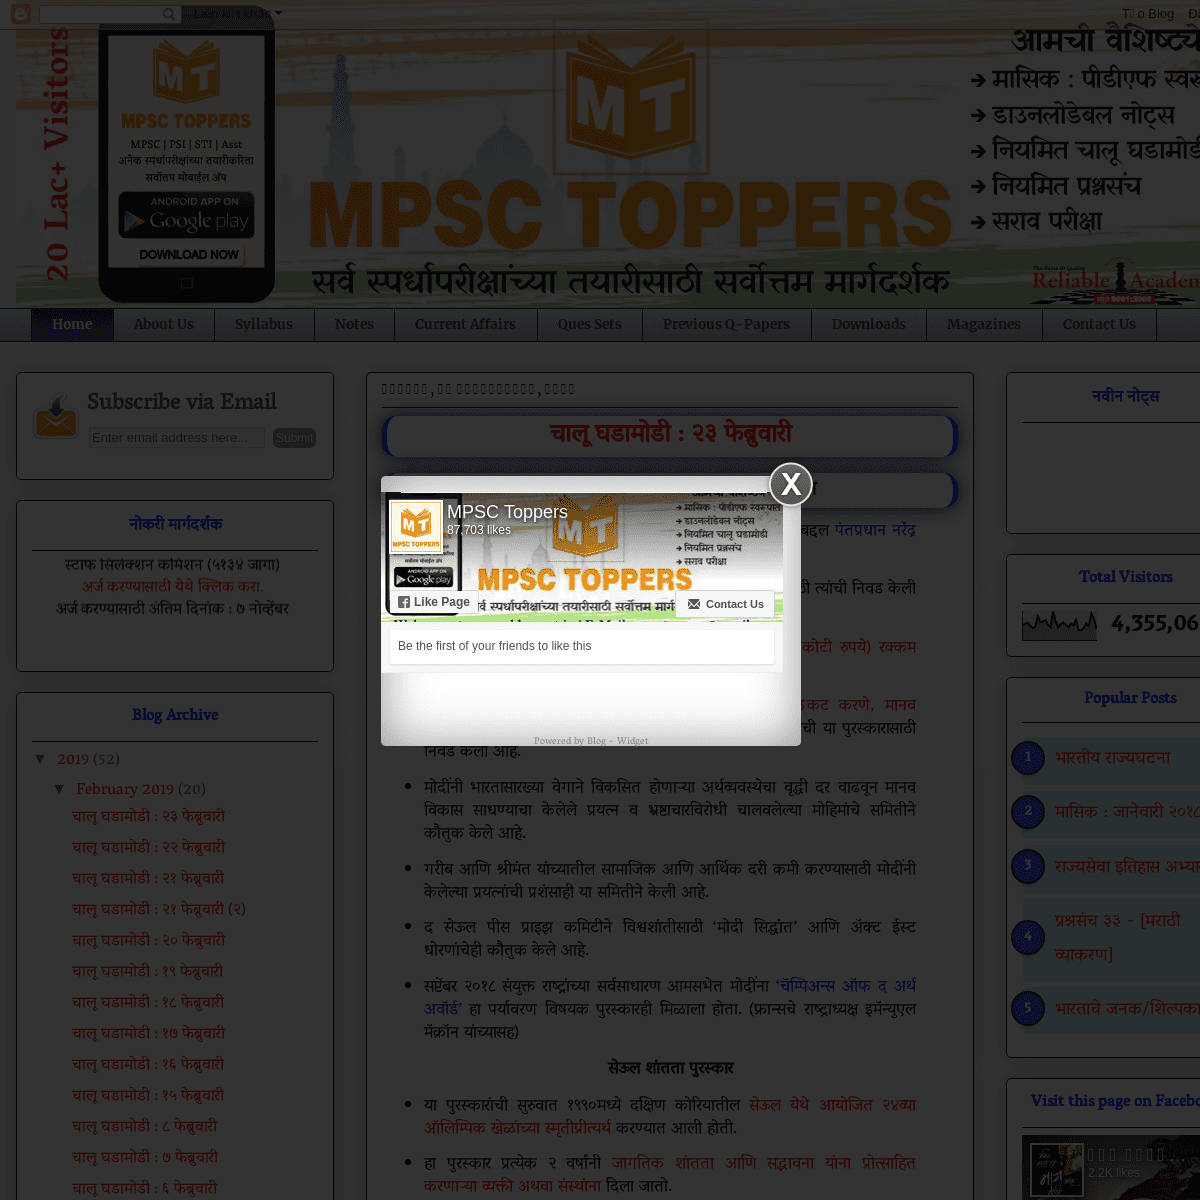 MPSC TOPPERS : स्पर्धा परीक्षा मार्गदर्शन 